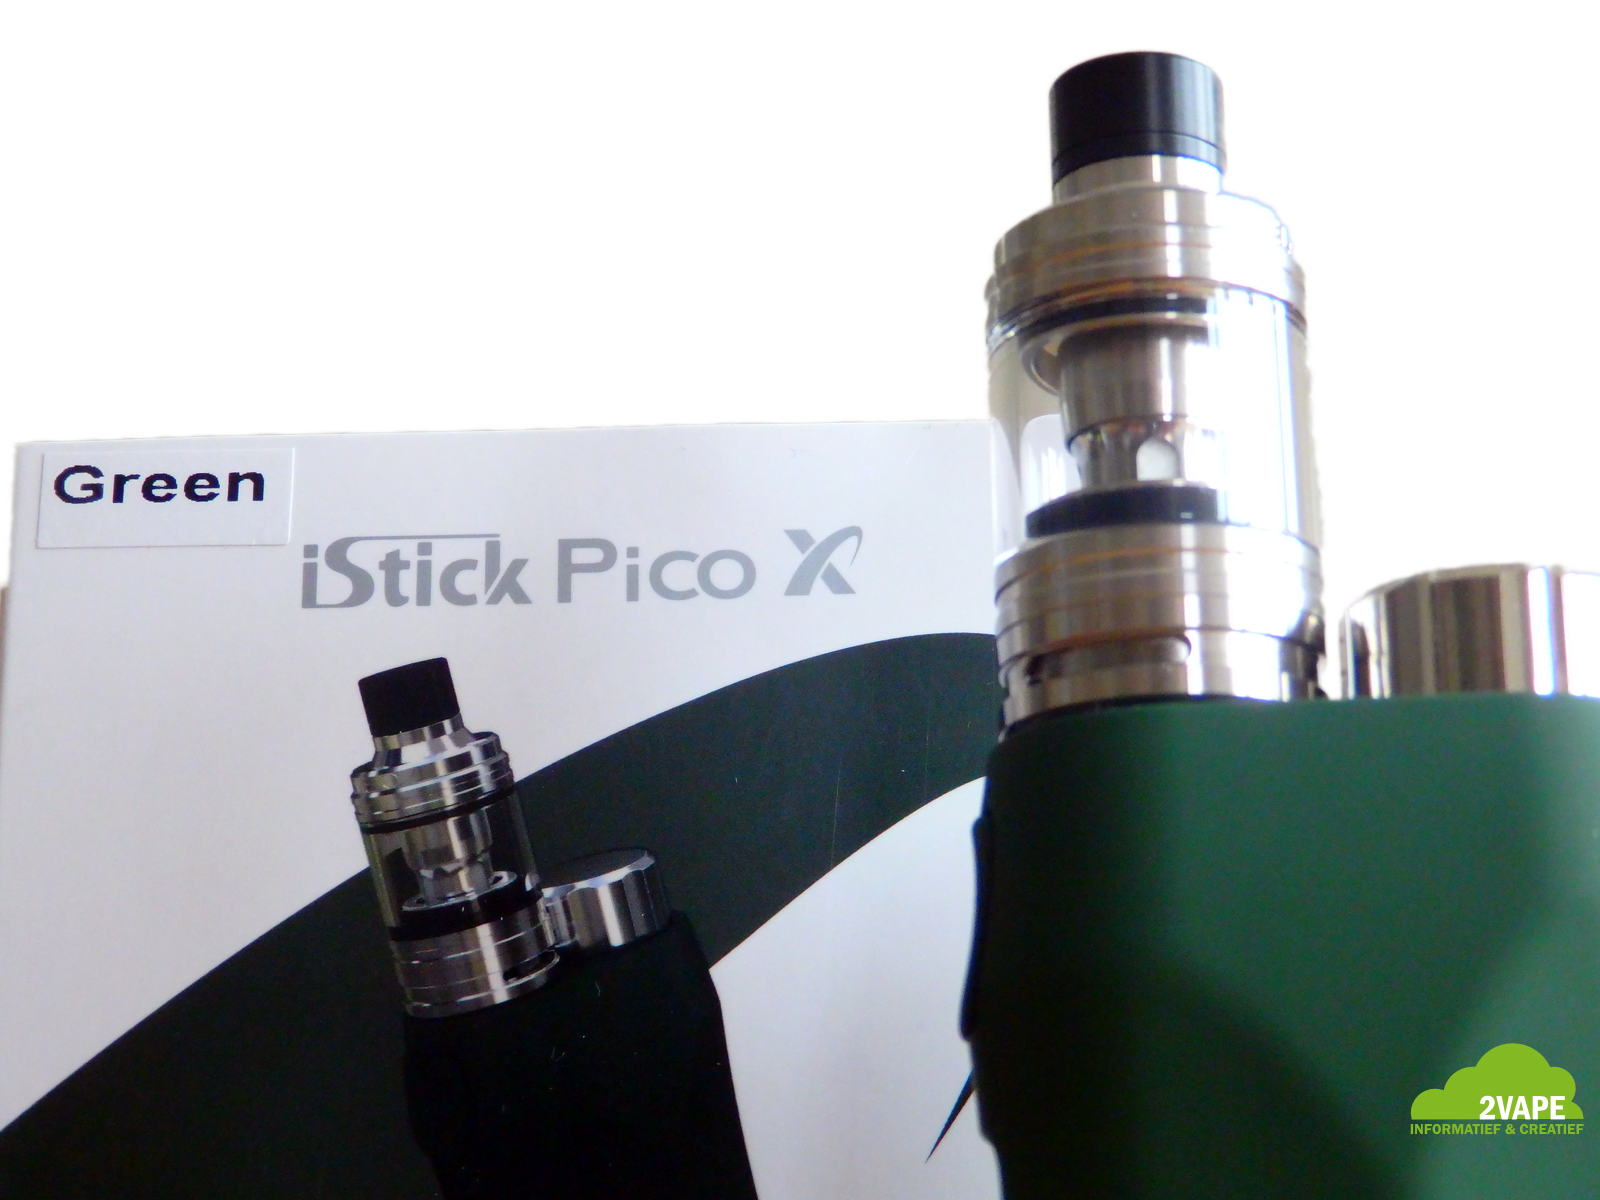 Eleaf iStick Pico X review